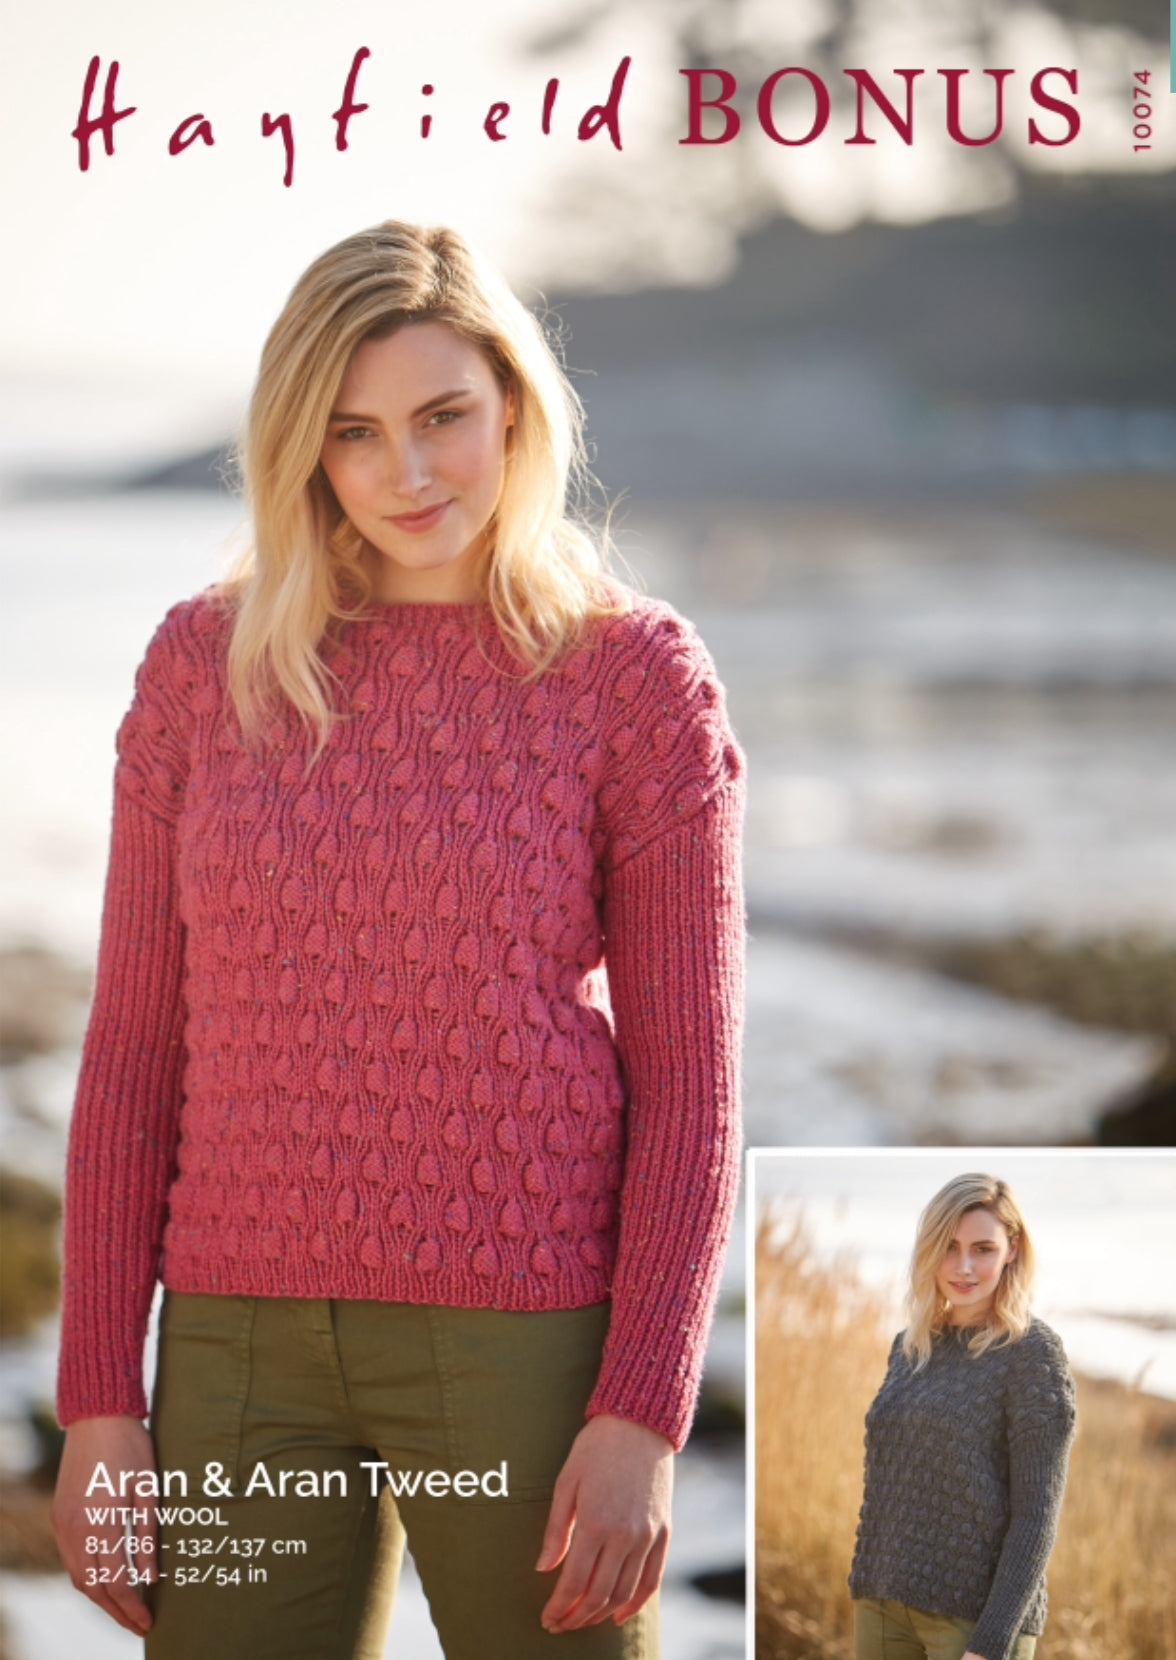 Hayfield Pattern 10074 Sweater in Hayfield Bonus Aran and Bonus Aran Tweed with Wool